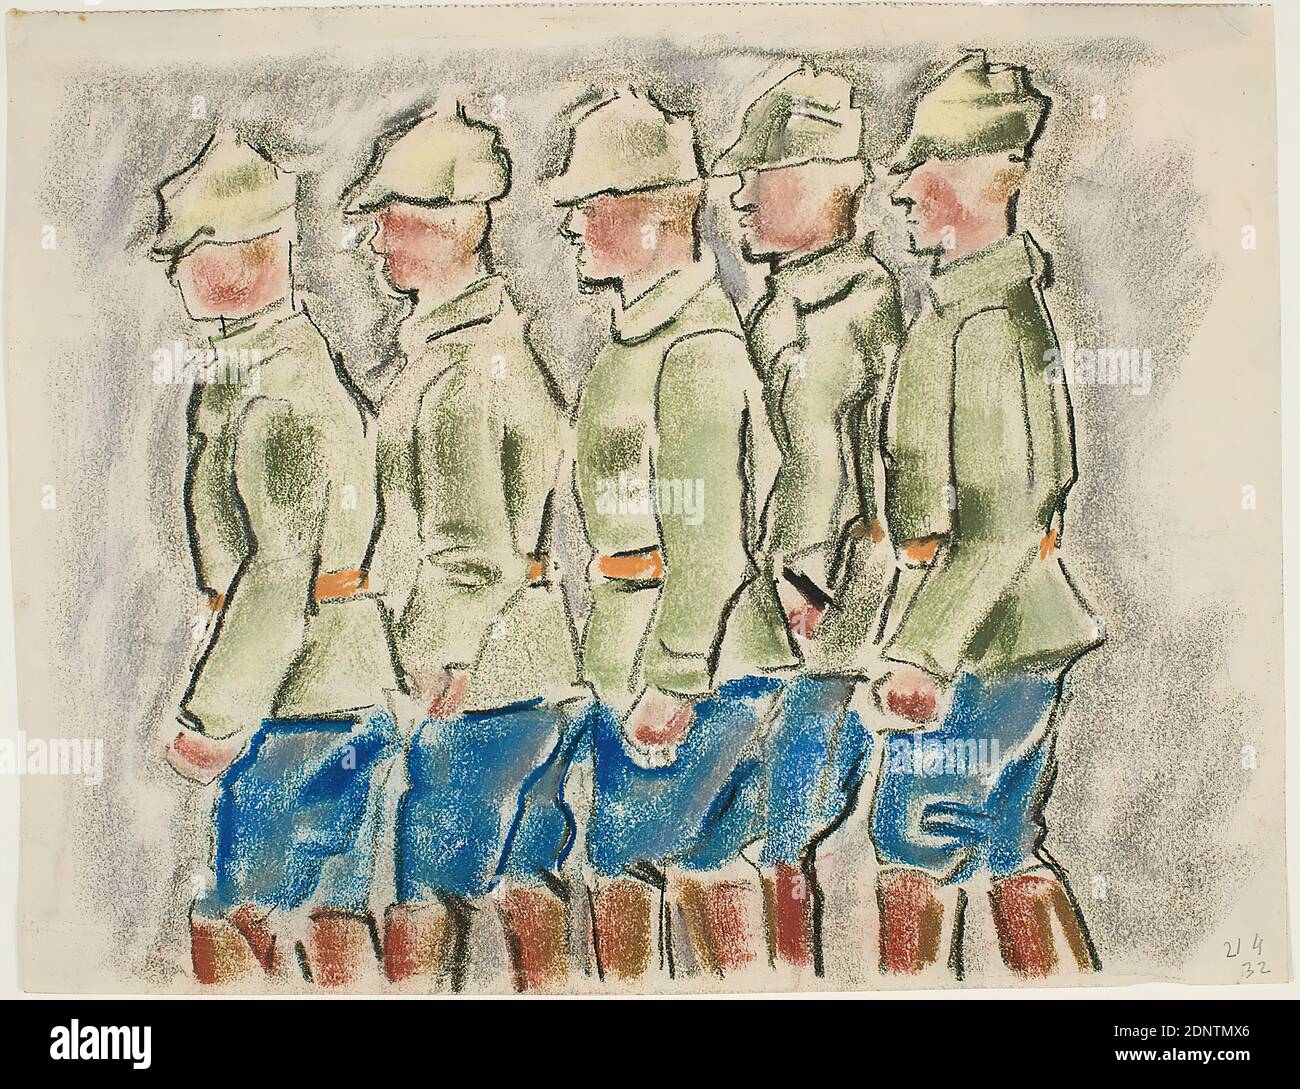 Gustav Heinrich Wolff, reclutas rusos, papel de dibujo, tiza pastel, dibujo,  pastel sobre papel de dibujo, total: Altura:  cm; ancho:  cm,  fechado en lápiz en la parte inferior derecha: 21